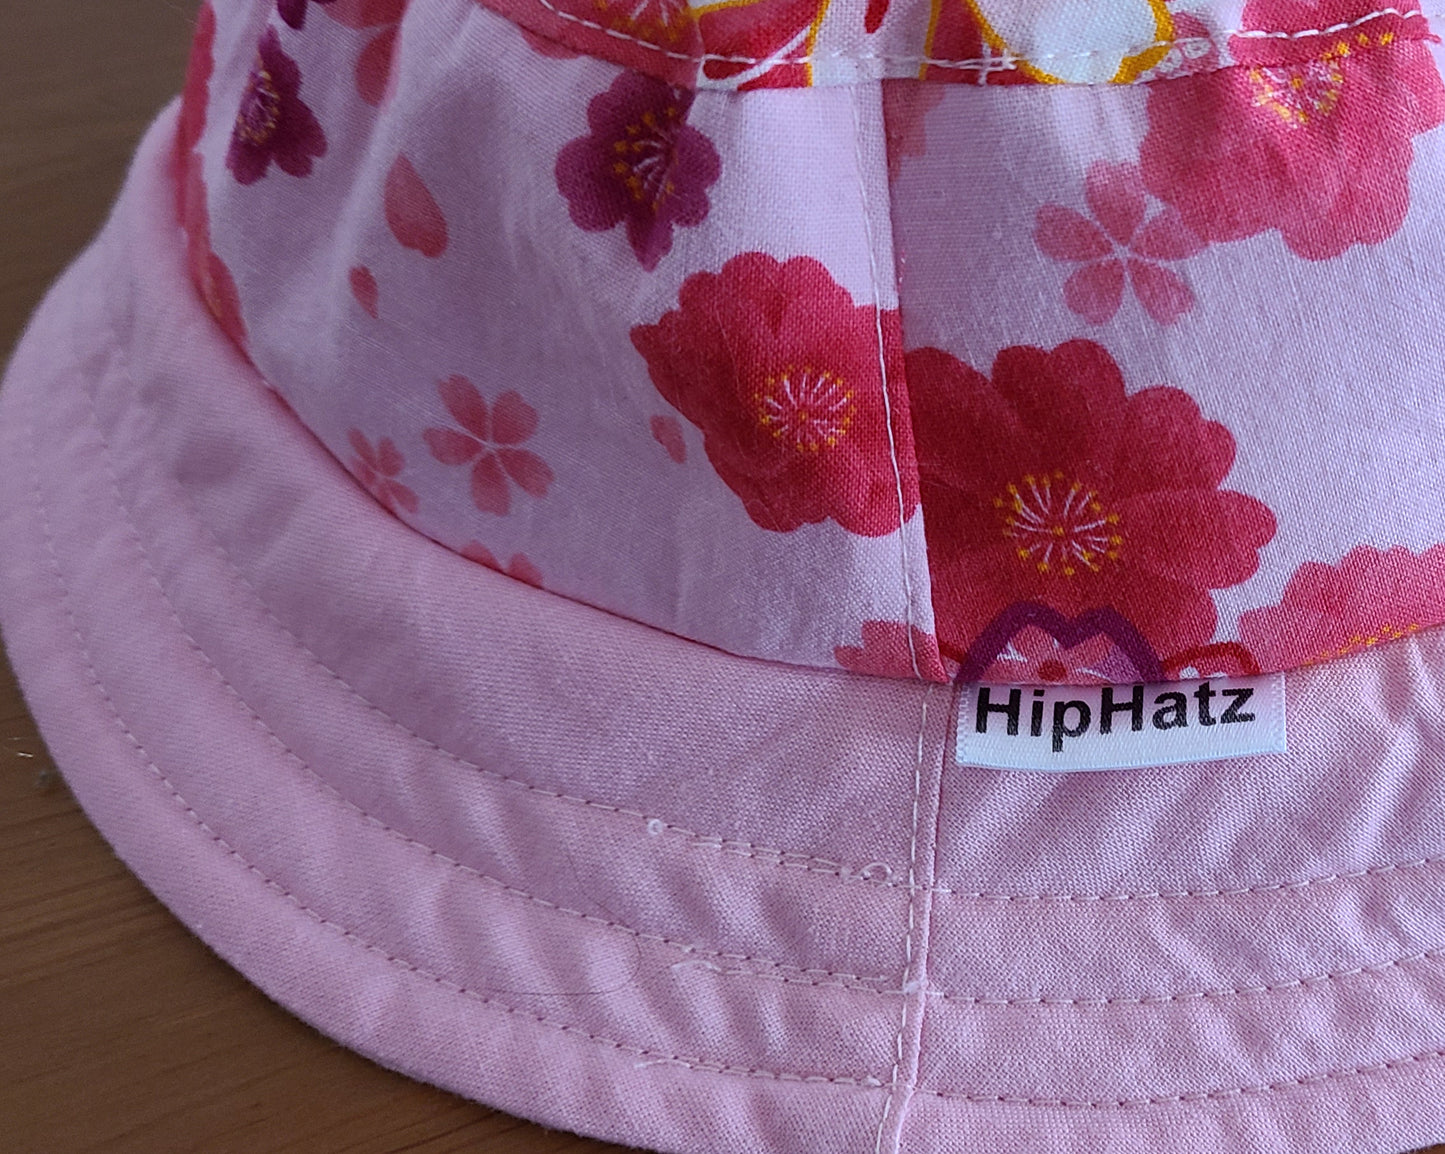 Hip Hatz - Pretty in Pink